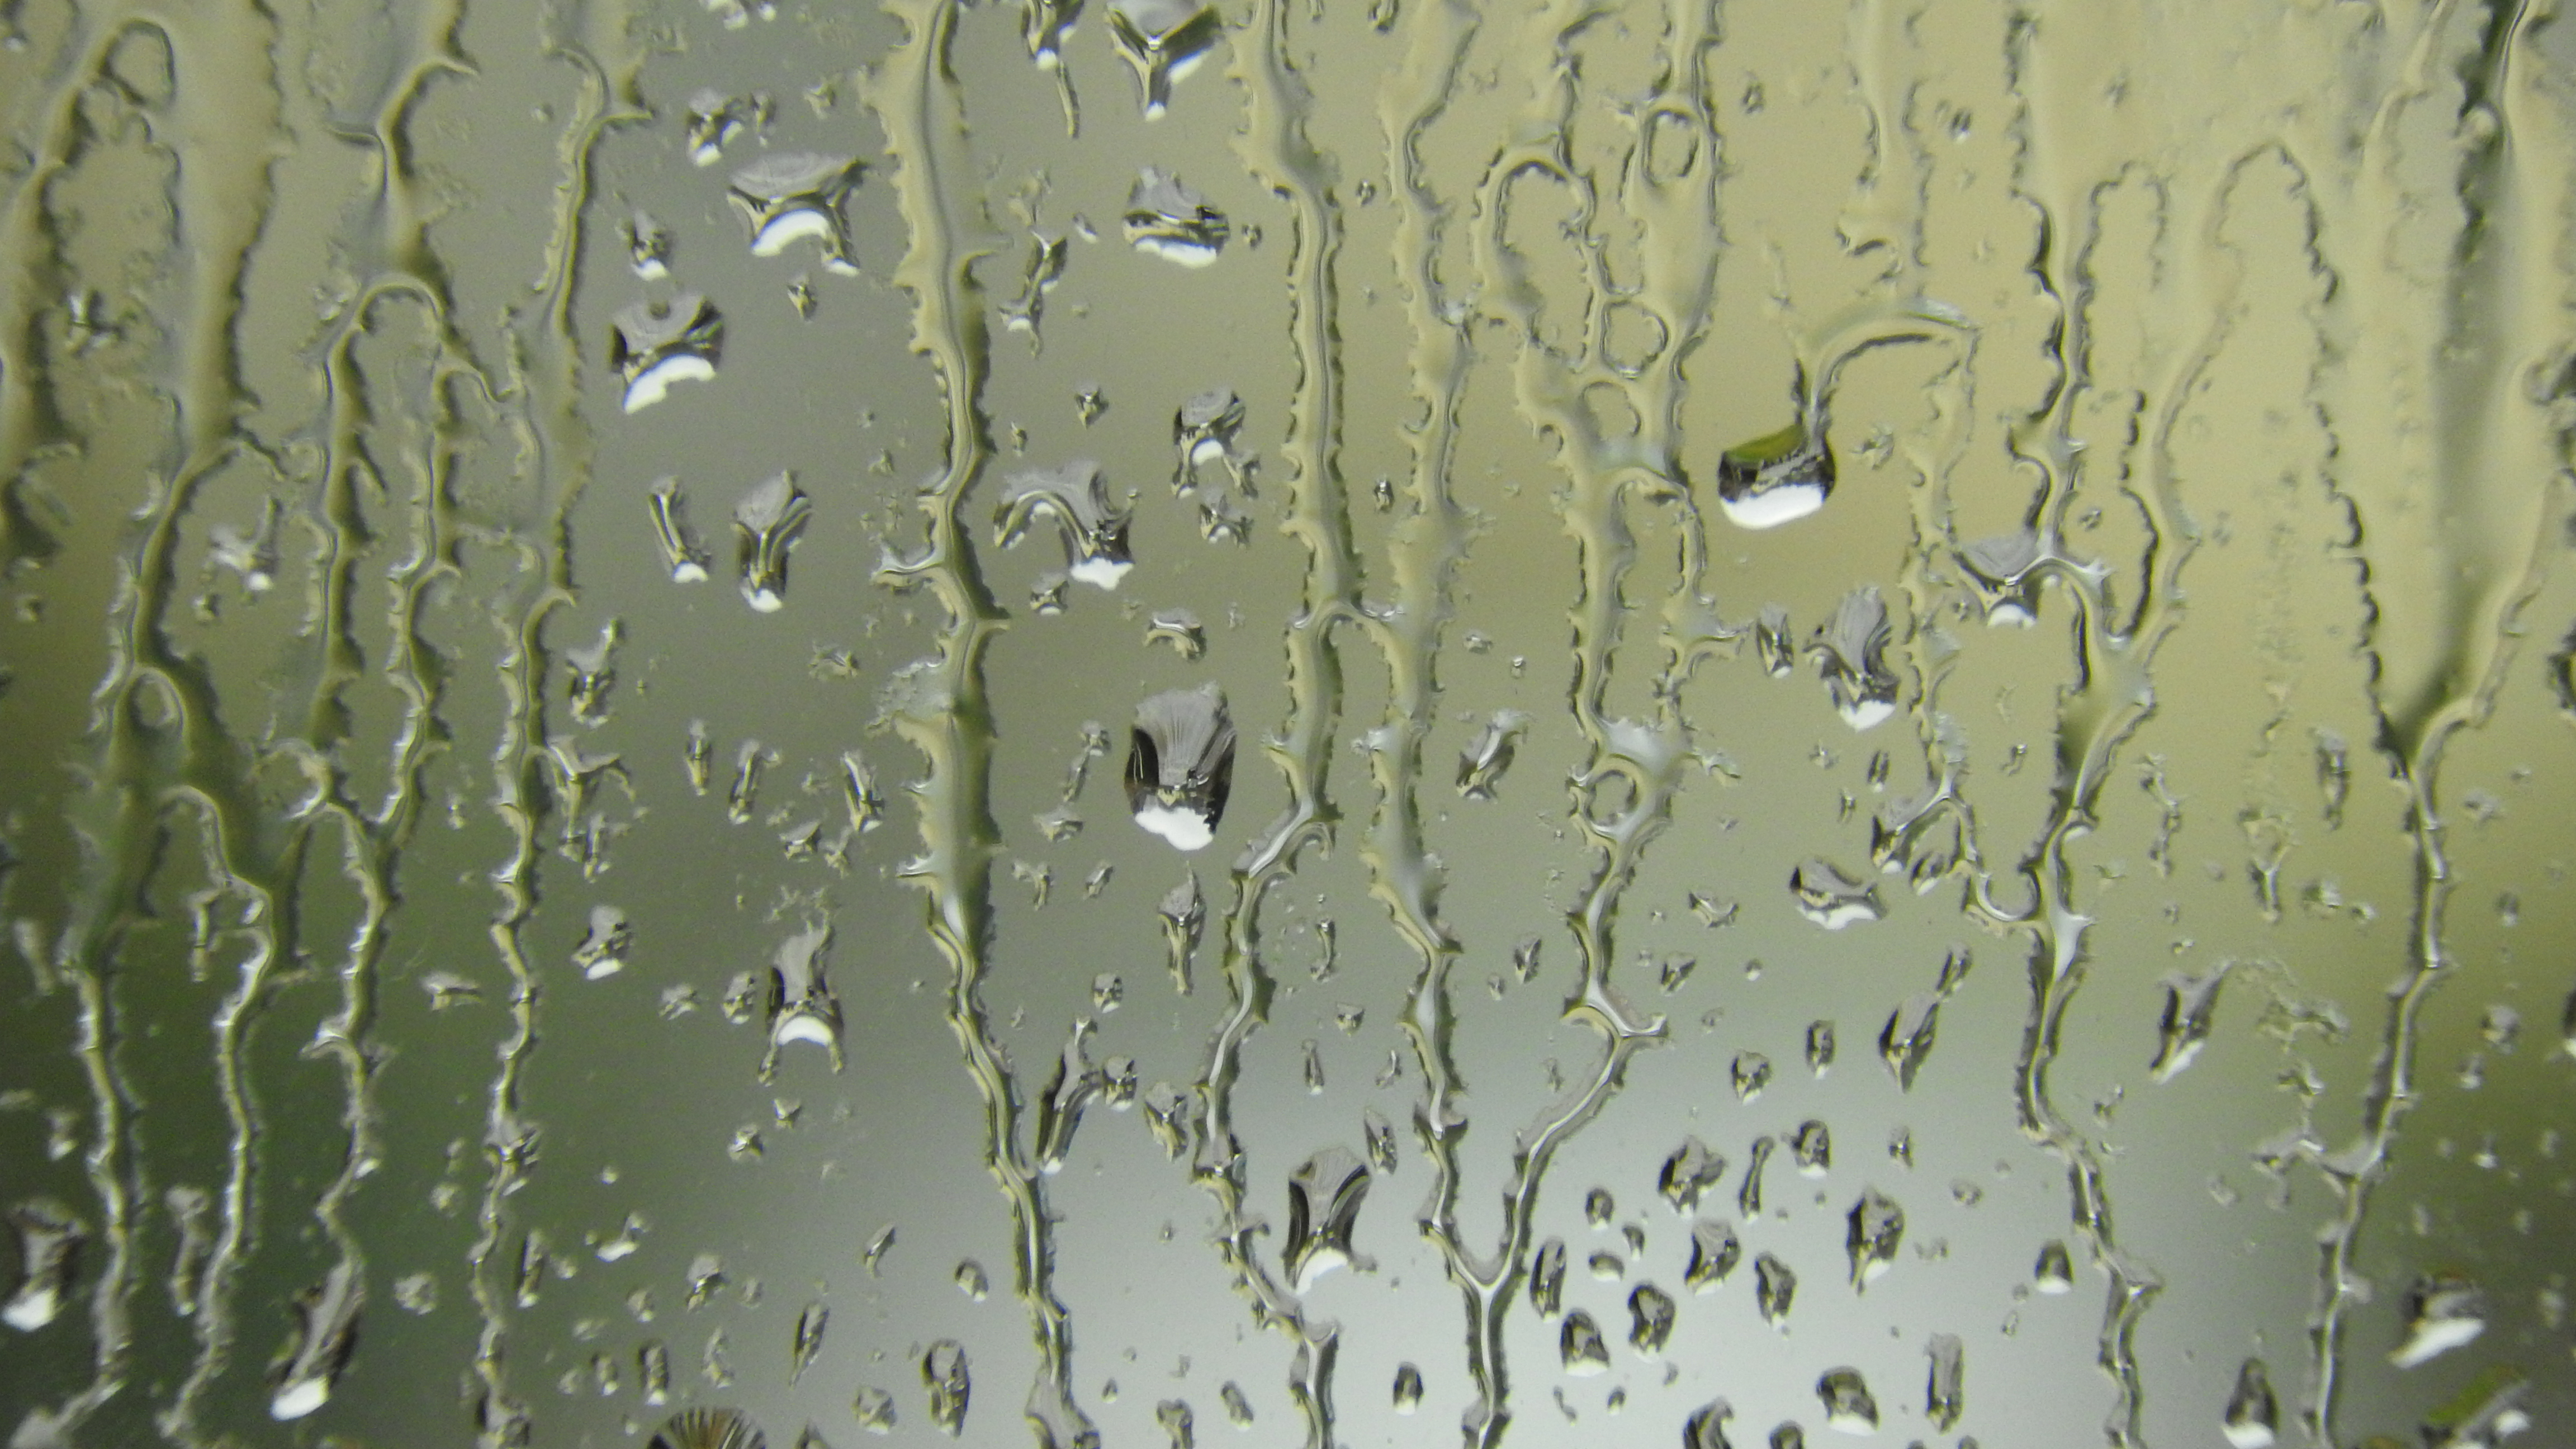 Auch das Wasser, das als Regen vom Himmel fällt, ist wissenschaftlich sehr spannend: Regentropfen an Fensterscheiben können zu kleinen Linsen werden.